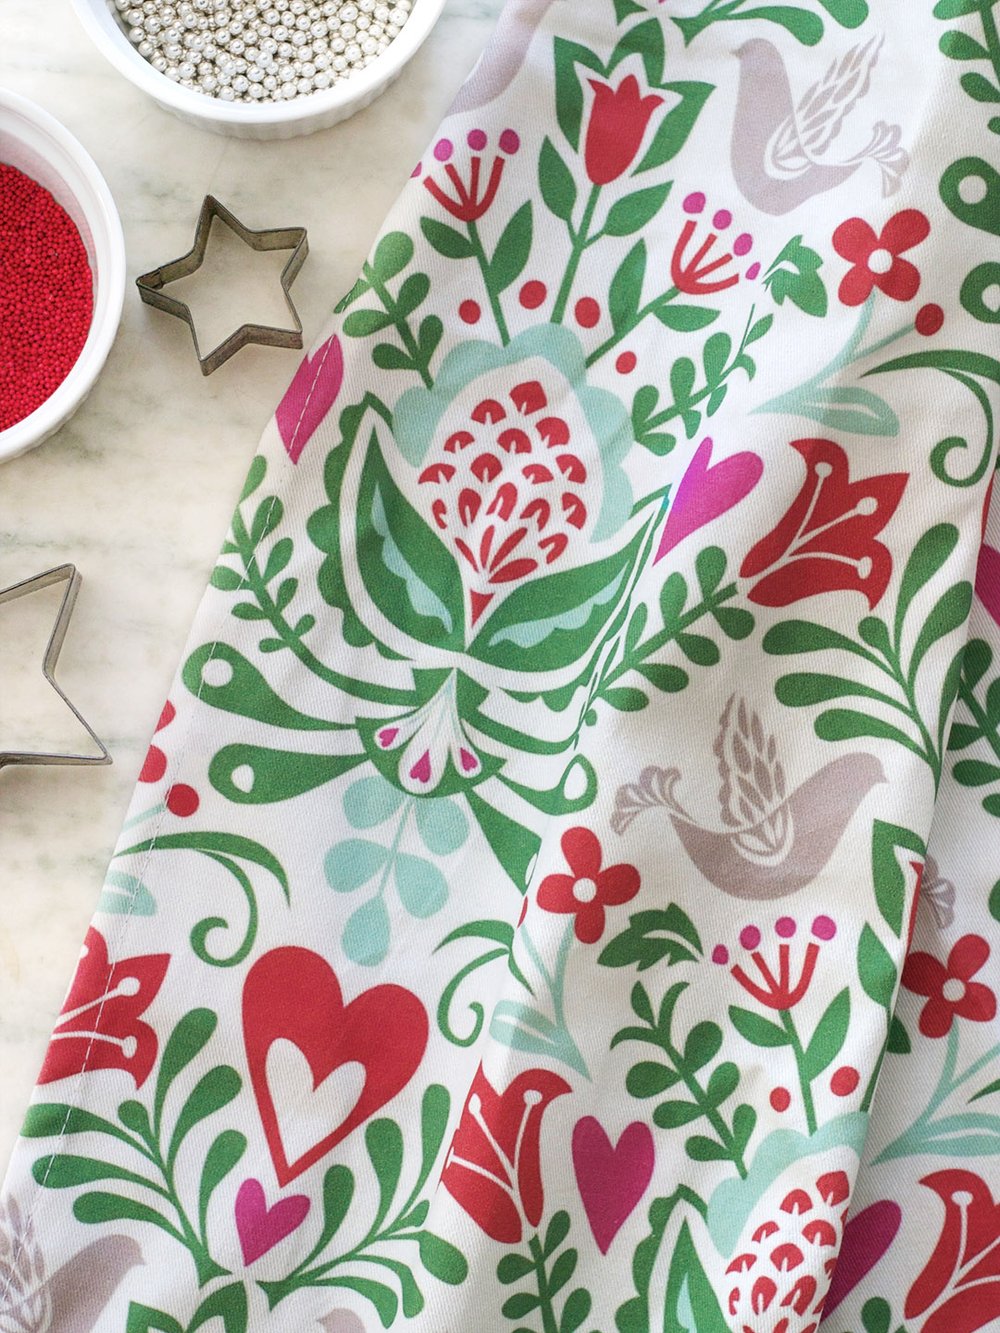 KD Spain — Rosemaling Christmas Holiday Winter Kitchen Tea Dish Towel